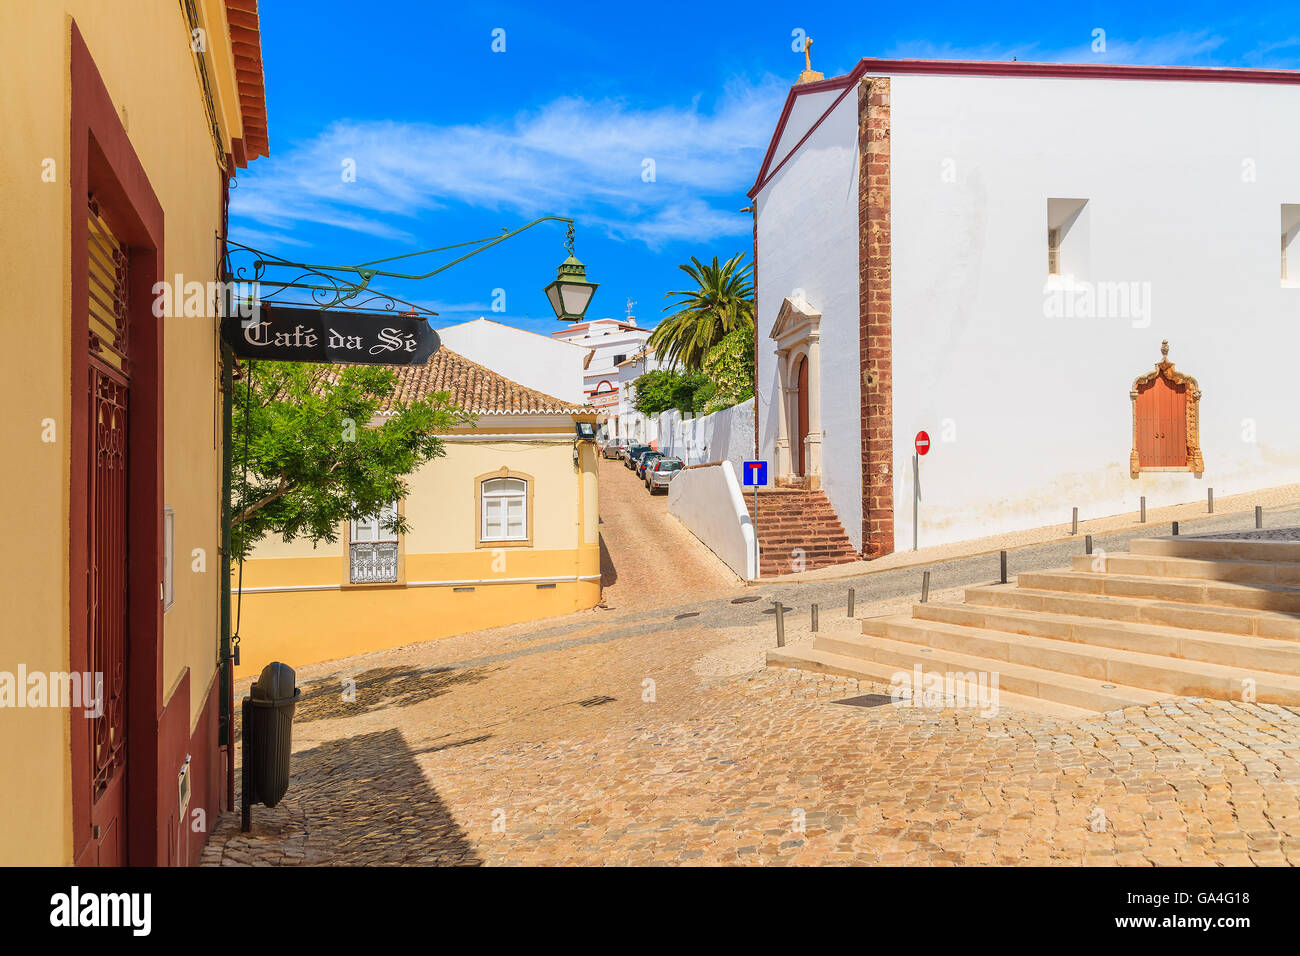 Città di Silves, Portogallo - 17 Maggio 2015: tipiche case nella città vecchia di Silves, regione di Algarve, Portogallo. Silves è famosa città storica con il castello medievale che è meglio conservati in tutta la regione. Foto Stock